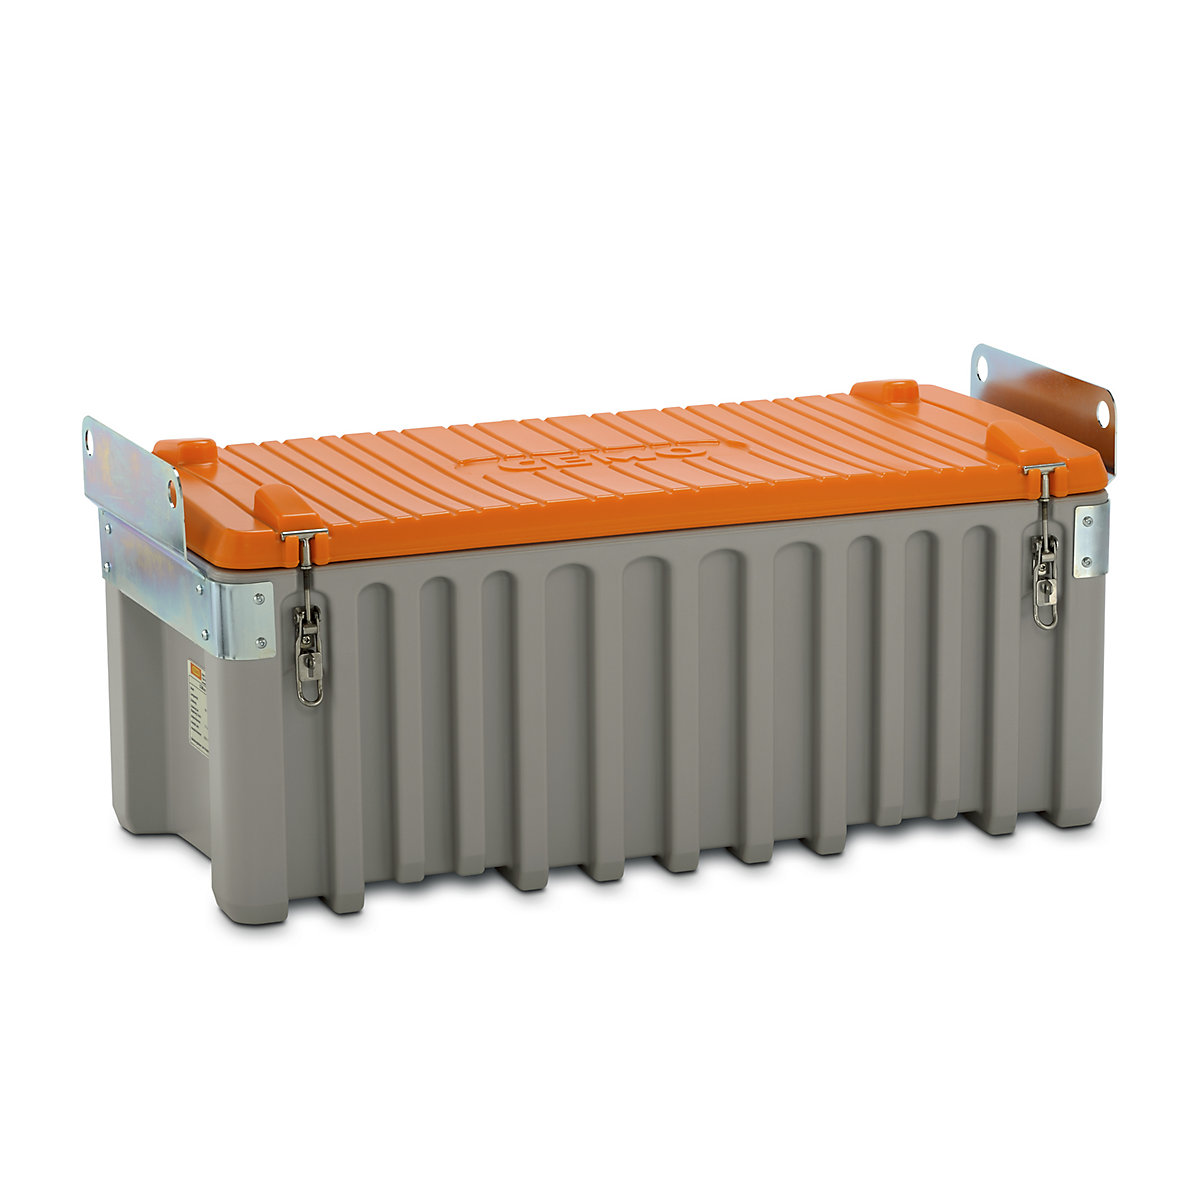 CEMO Universalbox aus Polyethylen, Inhalt 250 l, kranbar, grau / orange